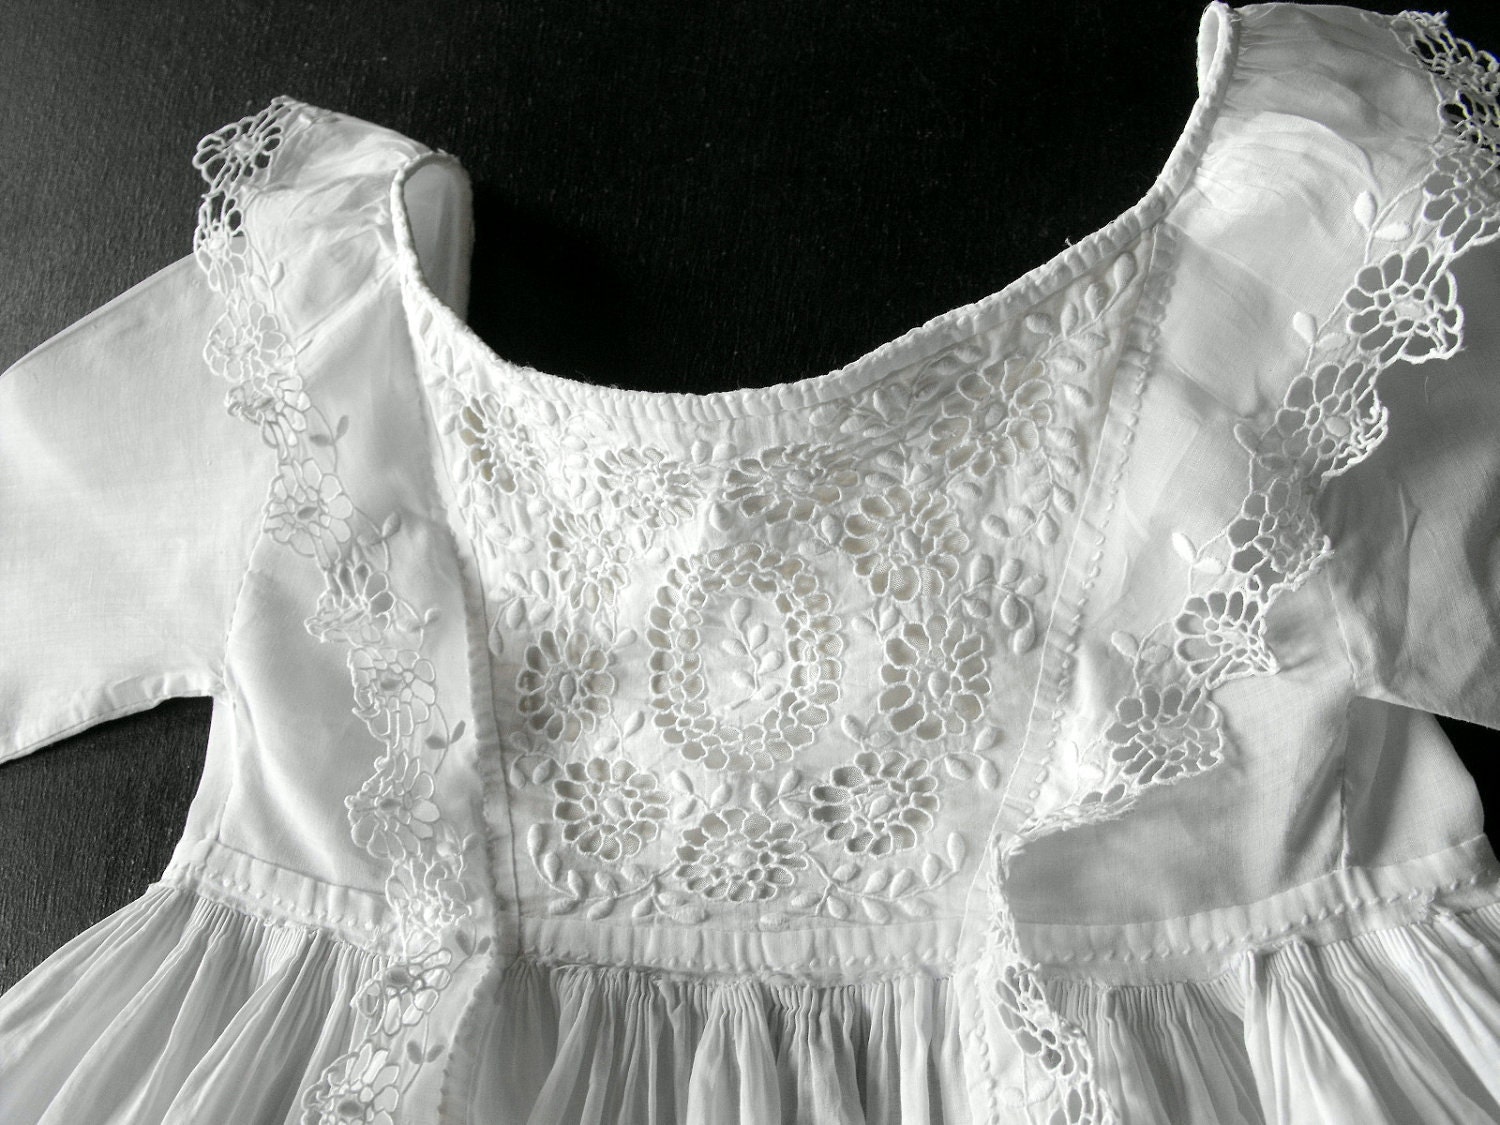 Christening Gown Vintage English w/ fine Handworked